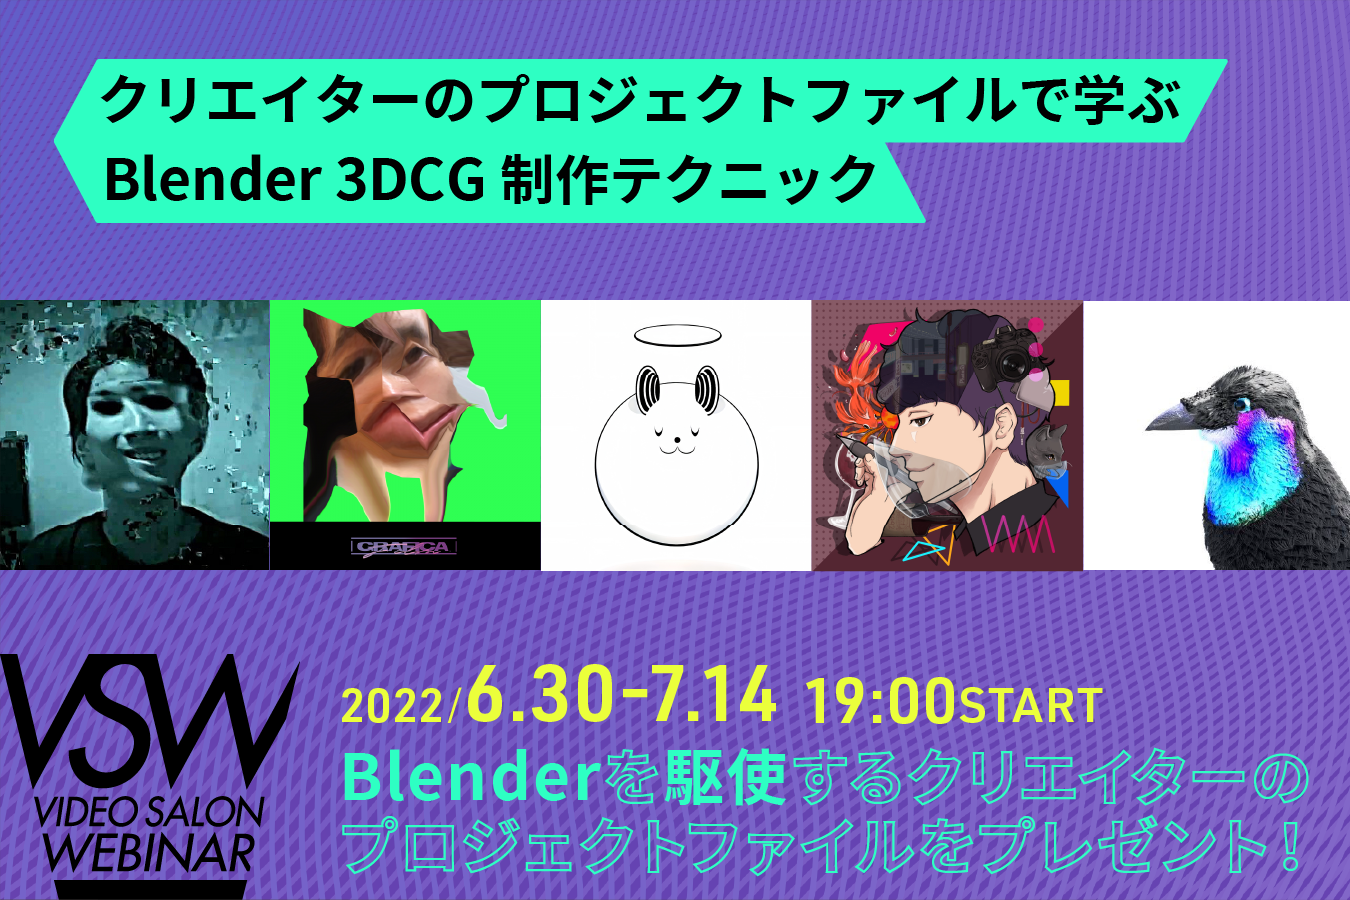 9月号特集連動ウェビナー「Blender 3DCG製作テクニック」は6月30日〜7